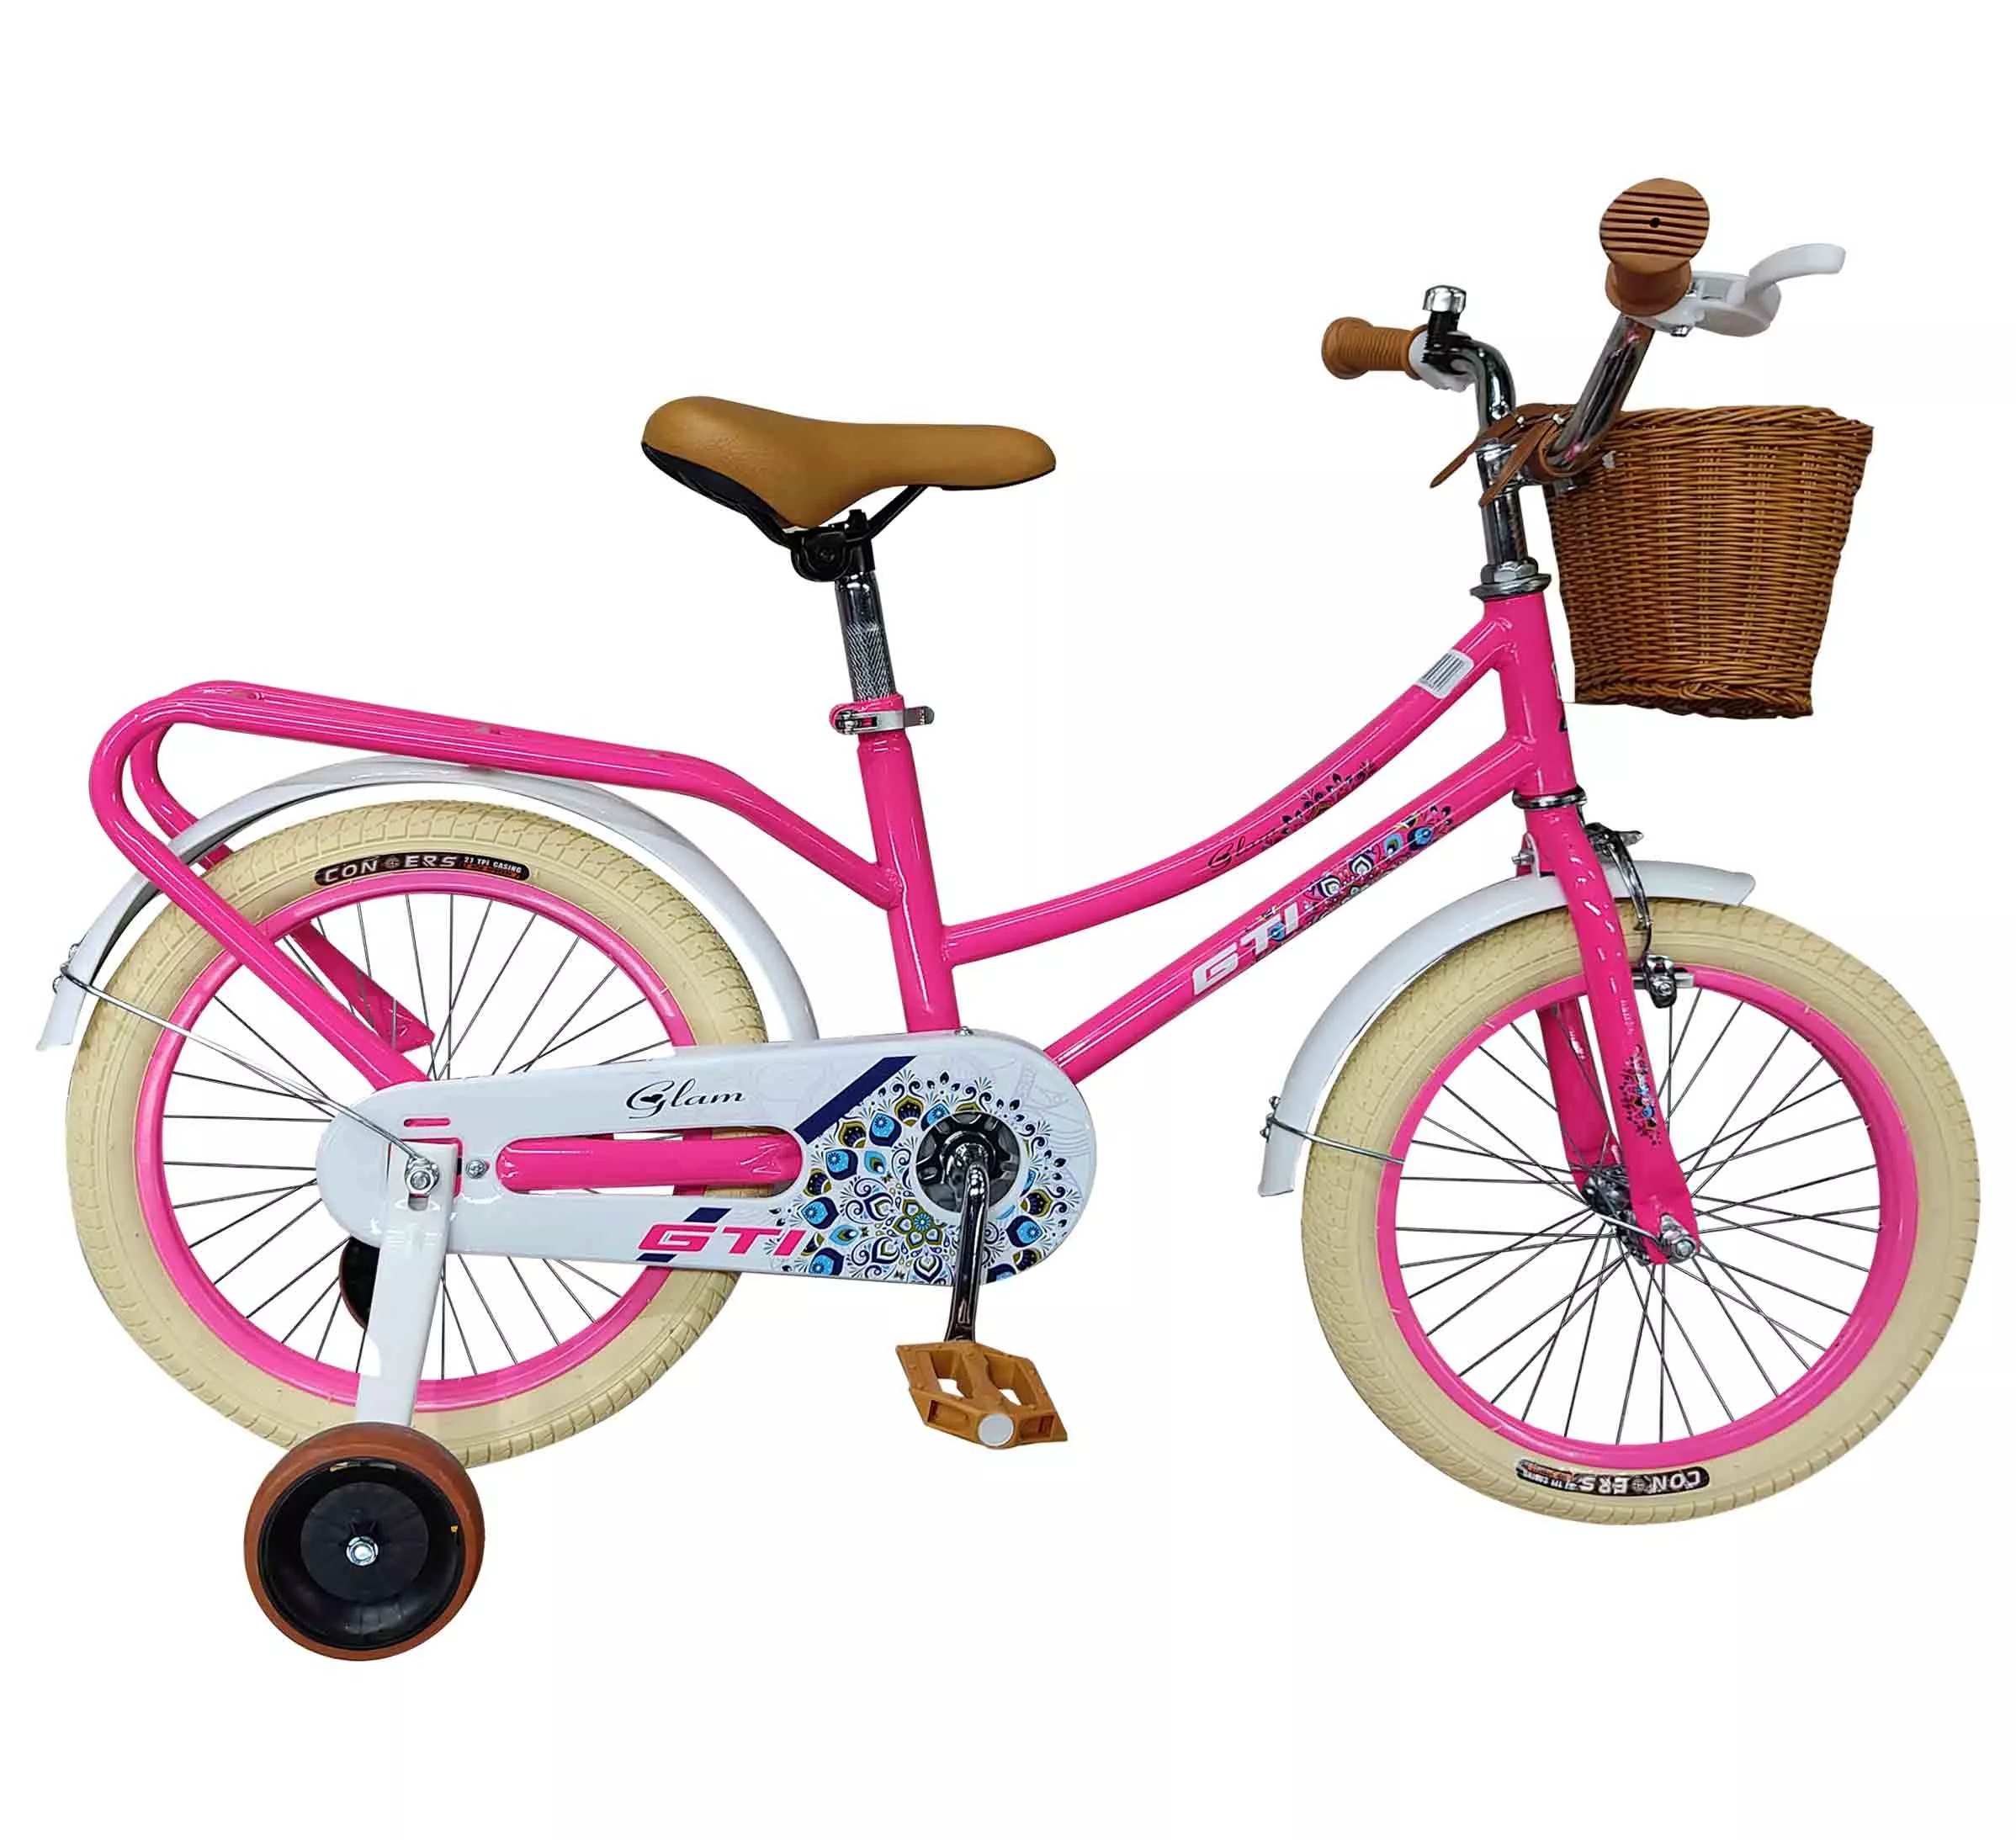 GTI Bicicleta glam aro16” de niña